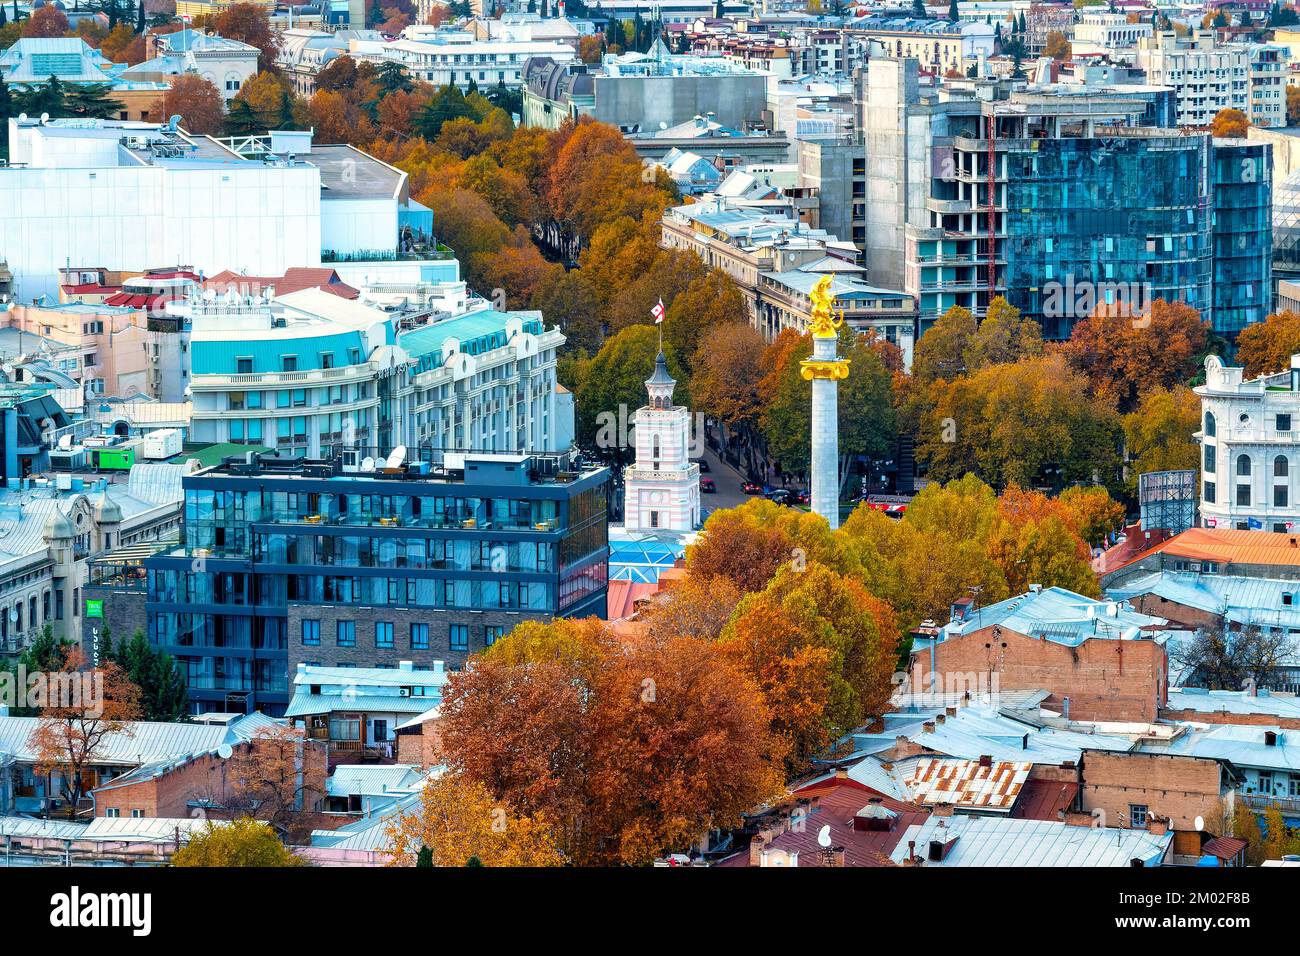 Vue aérienne de la place de la liberté, Tbilissi, Géorgie Banque D'Images